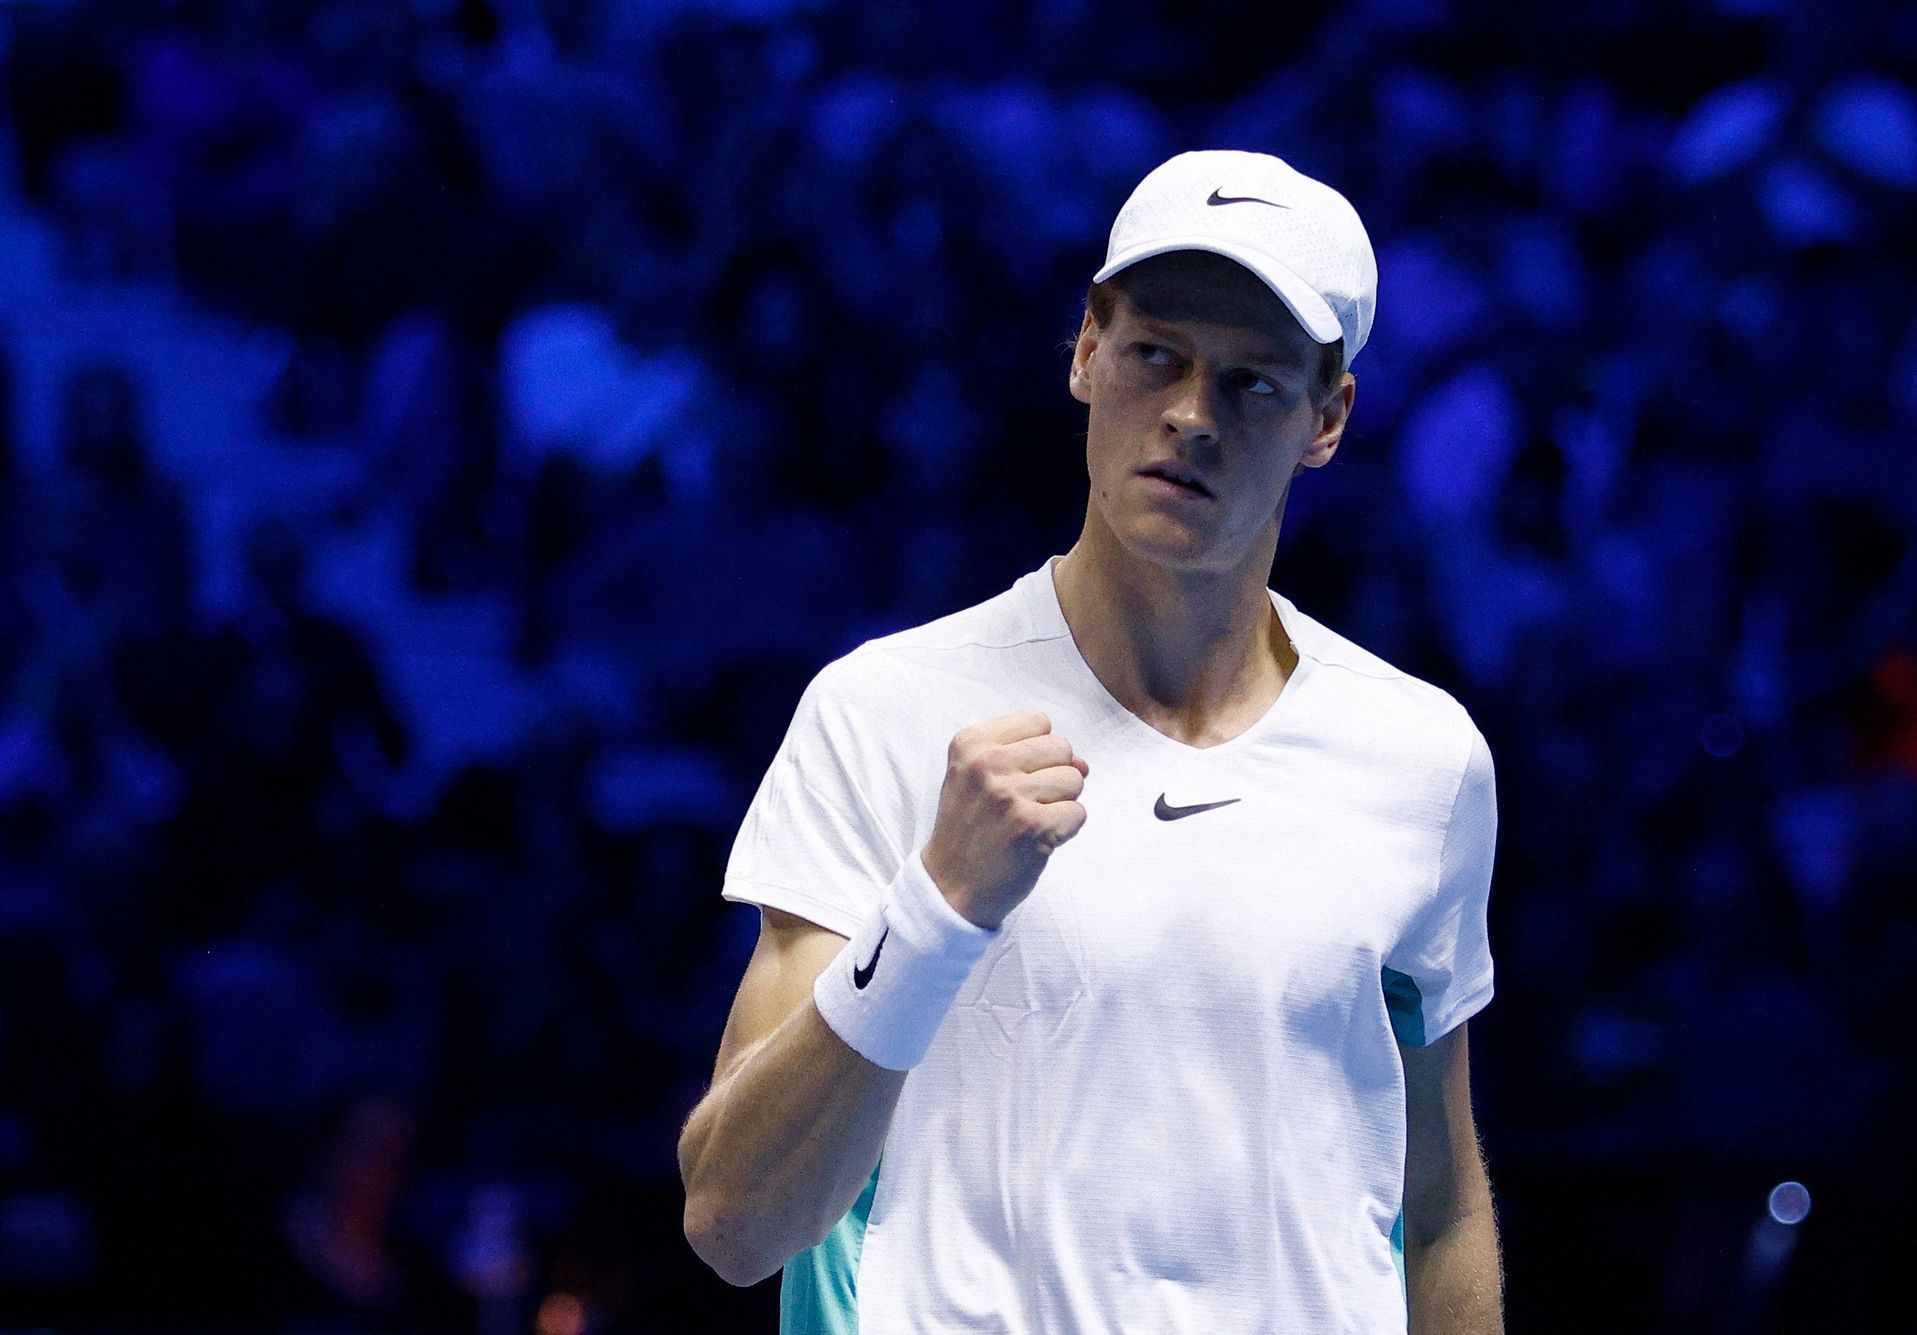 L’Italia festeggia un nuovo eroe: Sinner batte Medvedev, Djokovic lo aspetta in finale